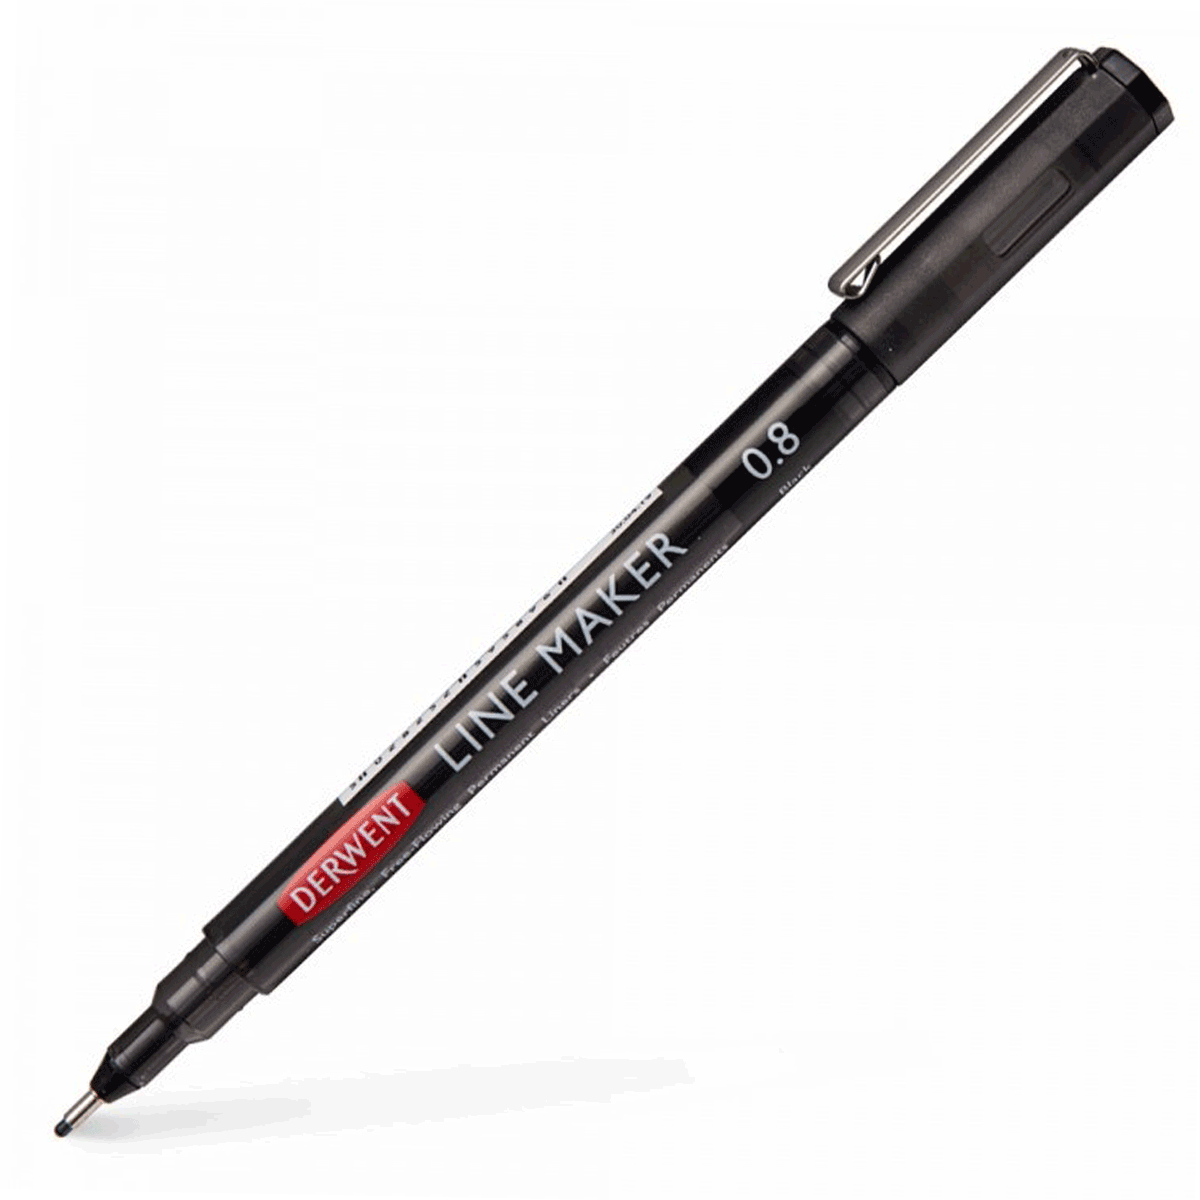 Derwent Graphik Line Maker Pen - Black 0.8